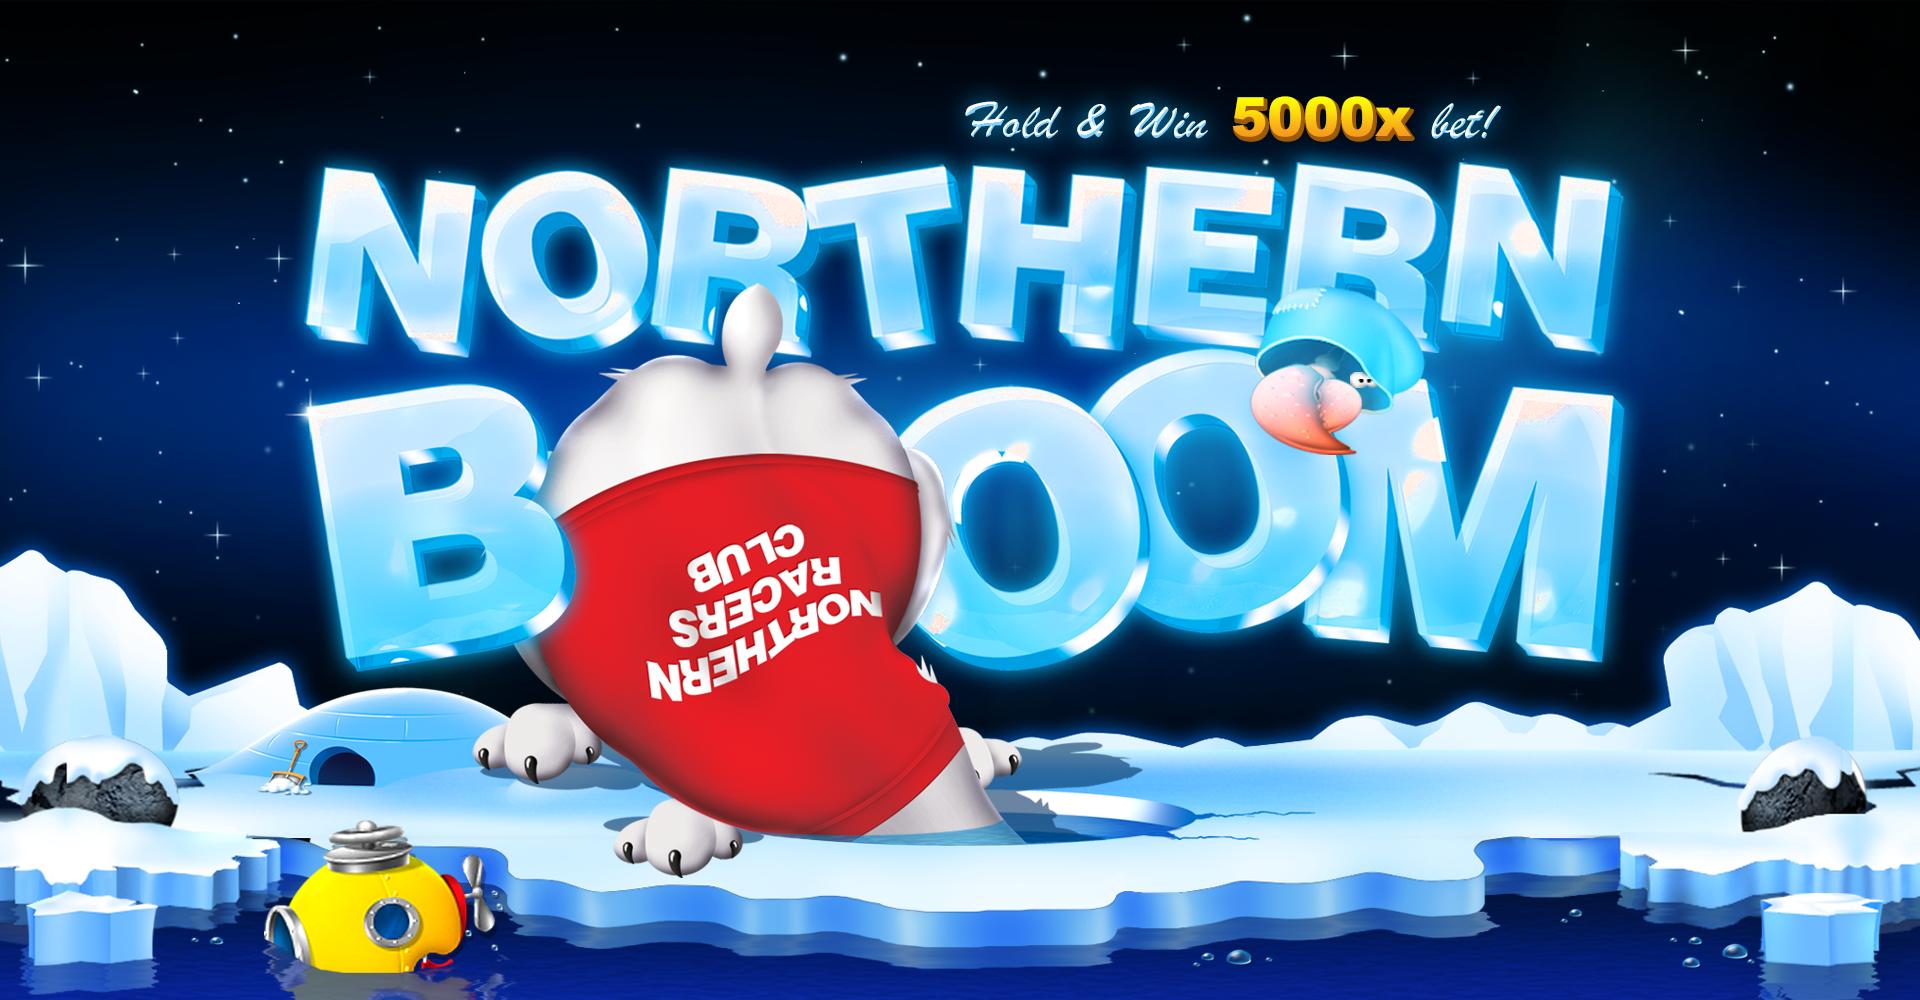 Northern Boom | Промо-материалы | Игровой автомат онлайн